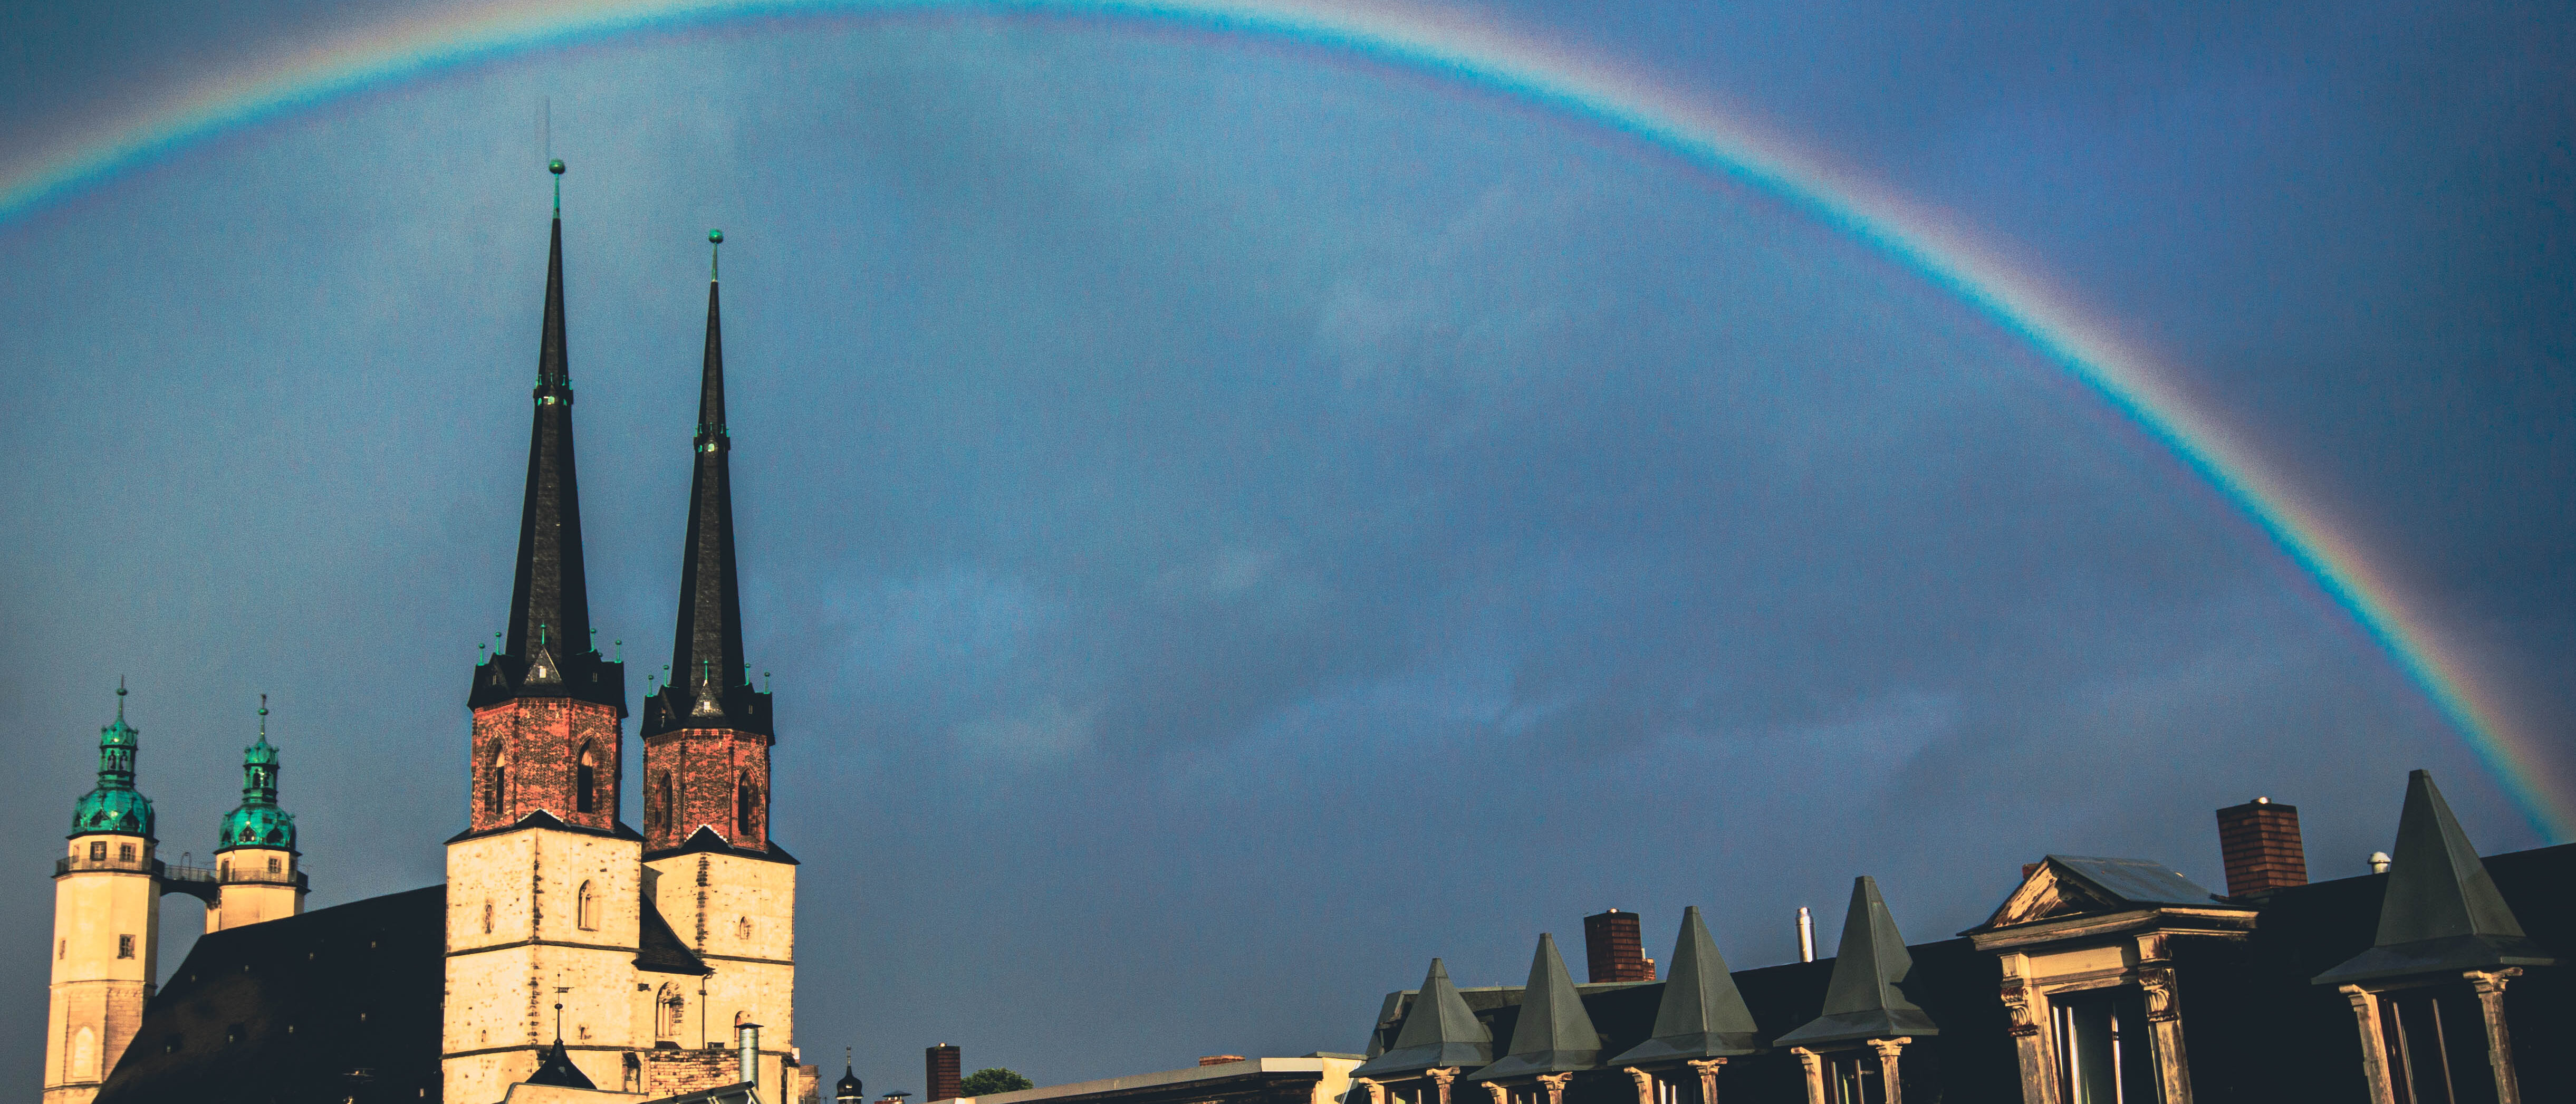 Bild über den Dächern der Stadt Halle mit Marktkirche und Regenbogen